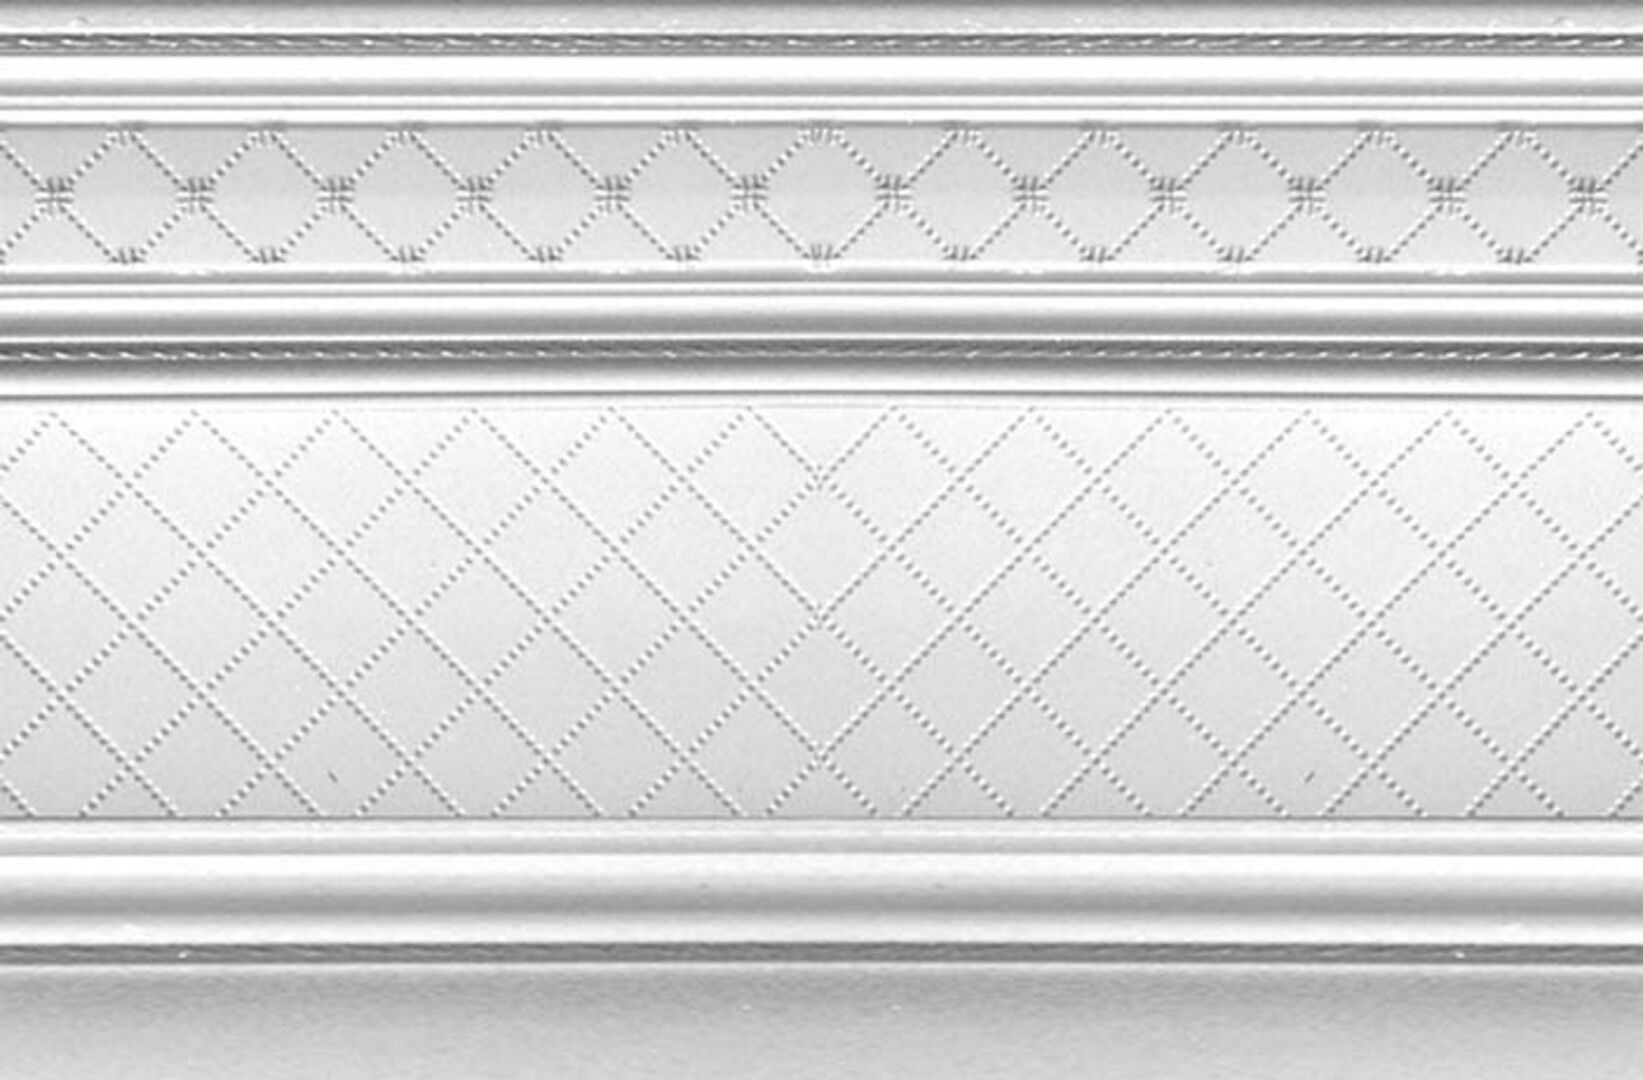 Керамическая плитка ZOCALO LONDON R 20*30 / коллекция BUXY-MODUS-LONDON / производитель DUAL GRES / страна Испания